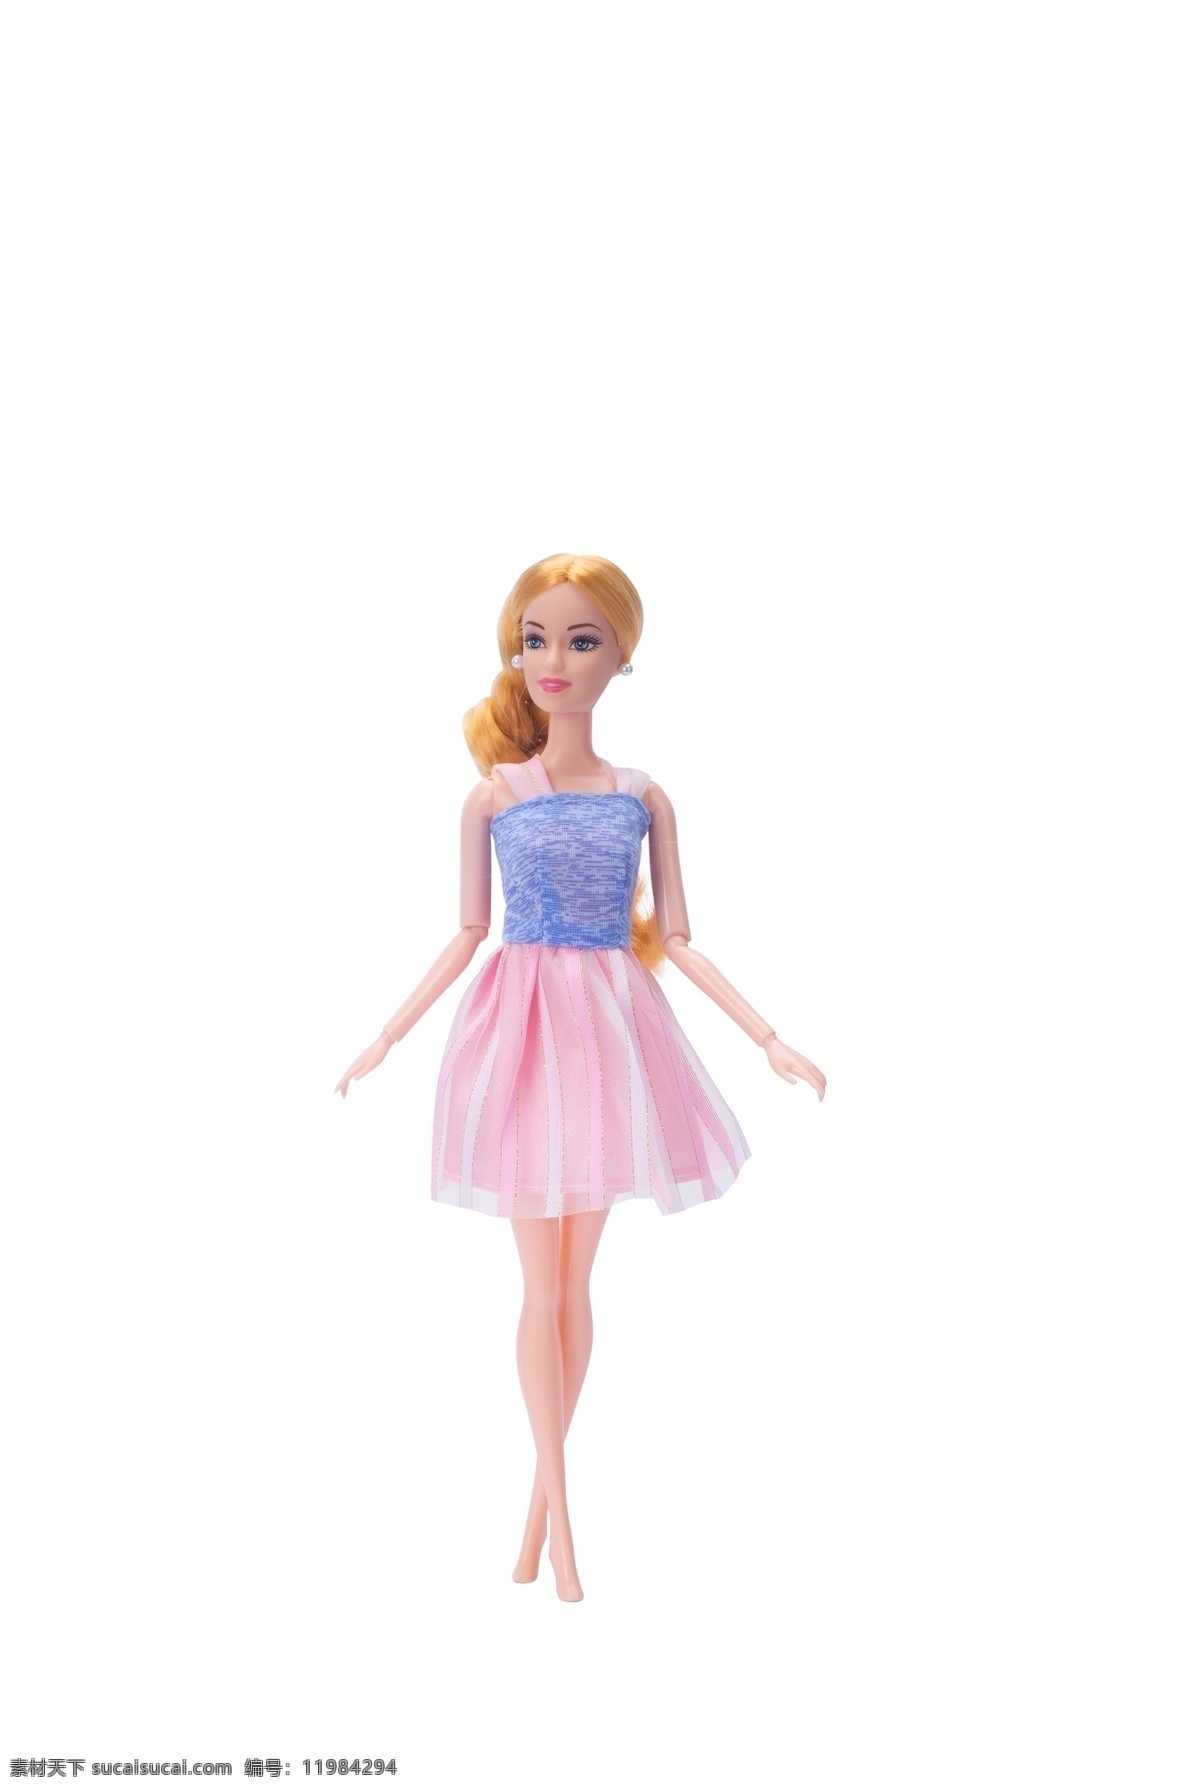 玩具娃娃 玩具 娃娃 美女 可爱 礼物 青色 粉色裙子